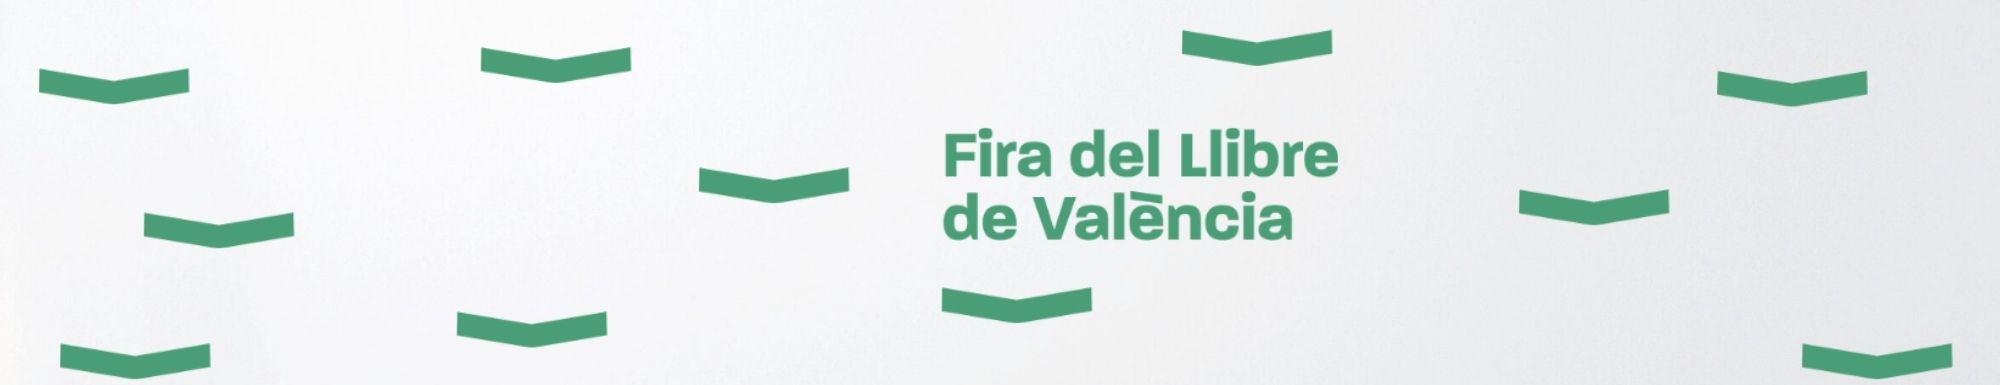 Calendario de firmas Algar Editorial Feria del Libro de Valencia